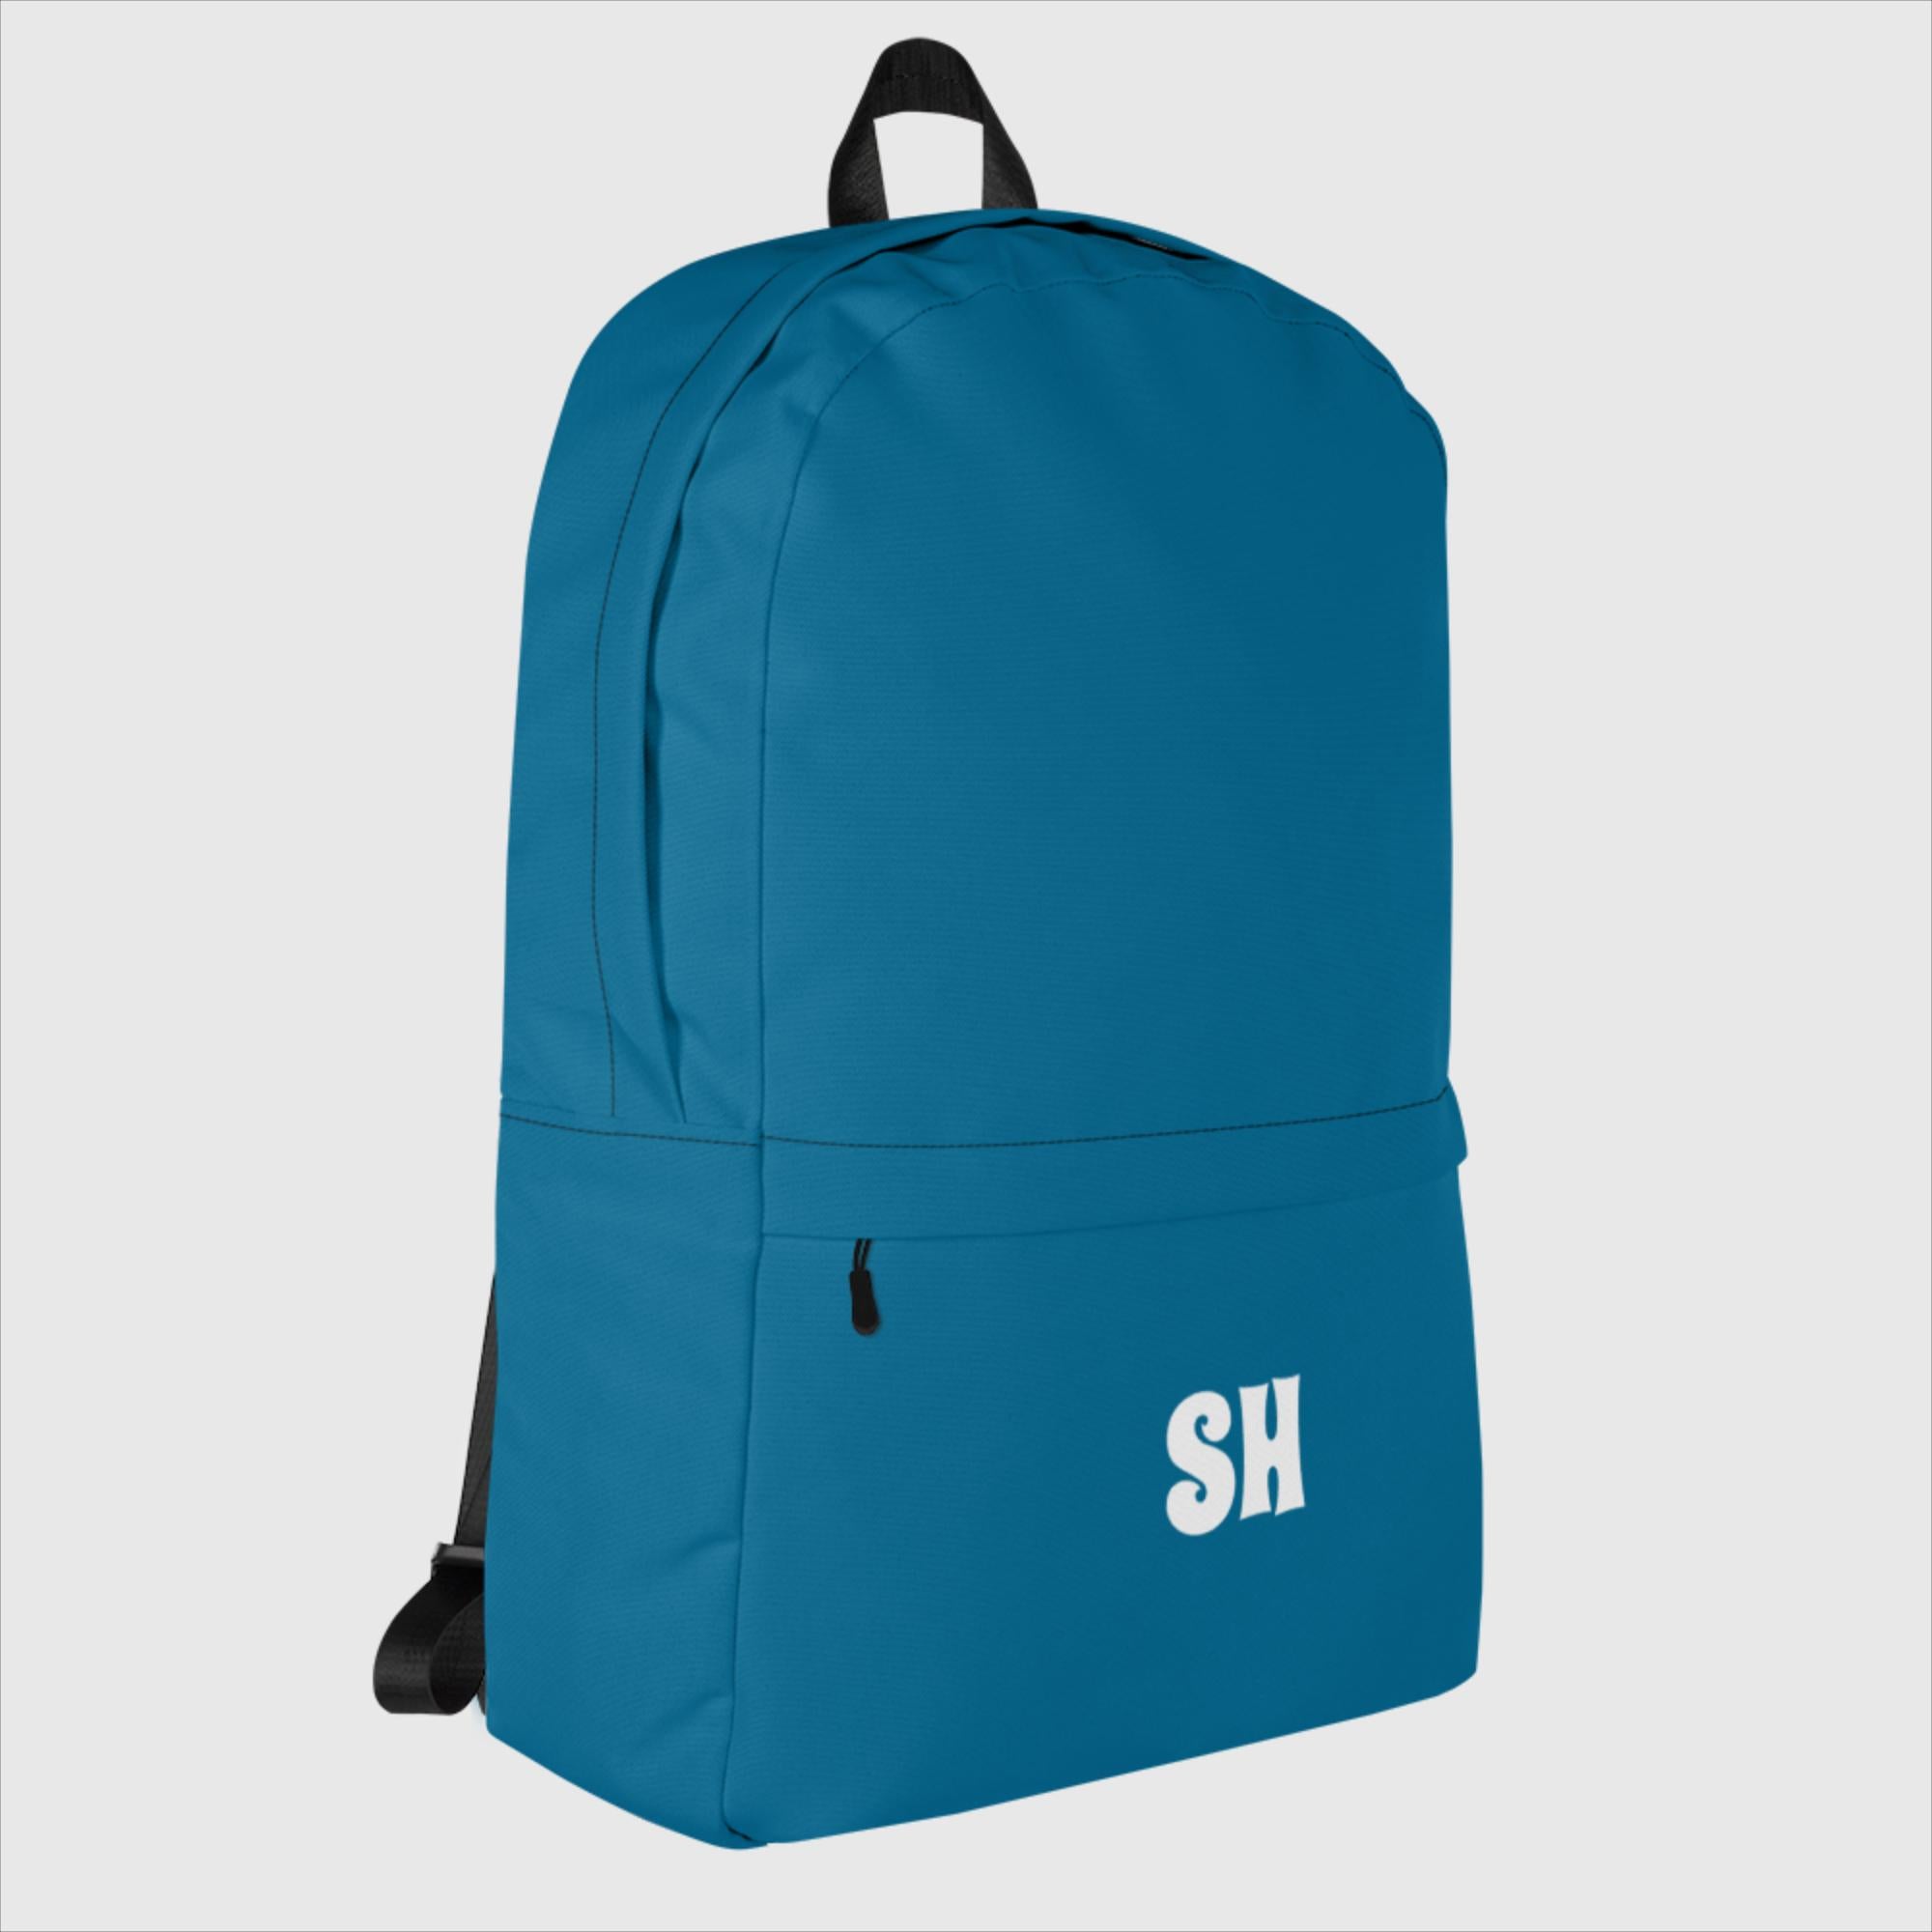 Backpack - SH